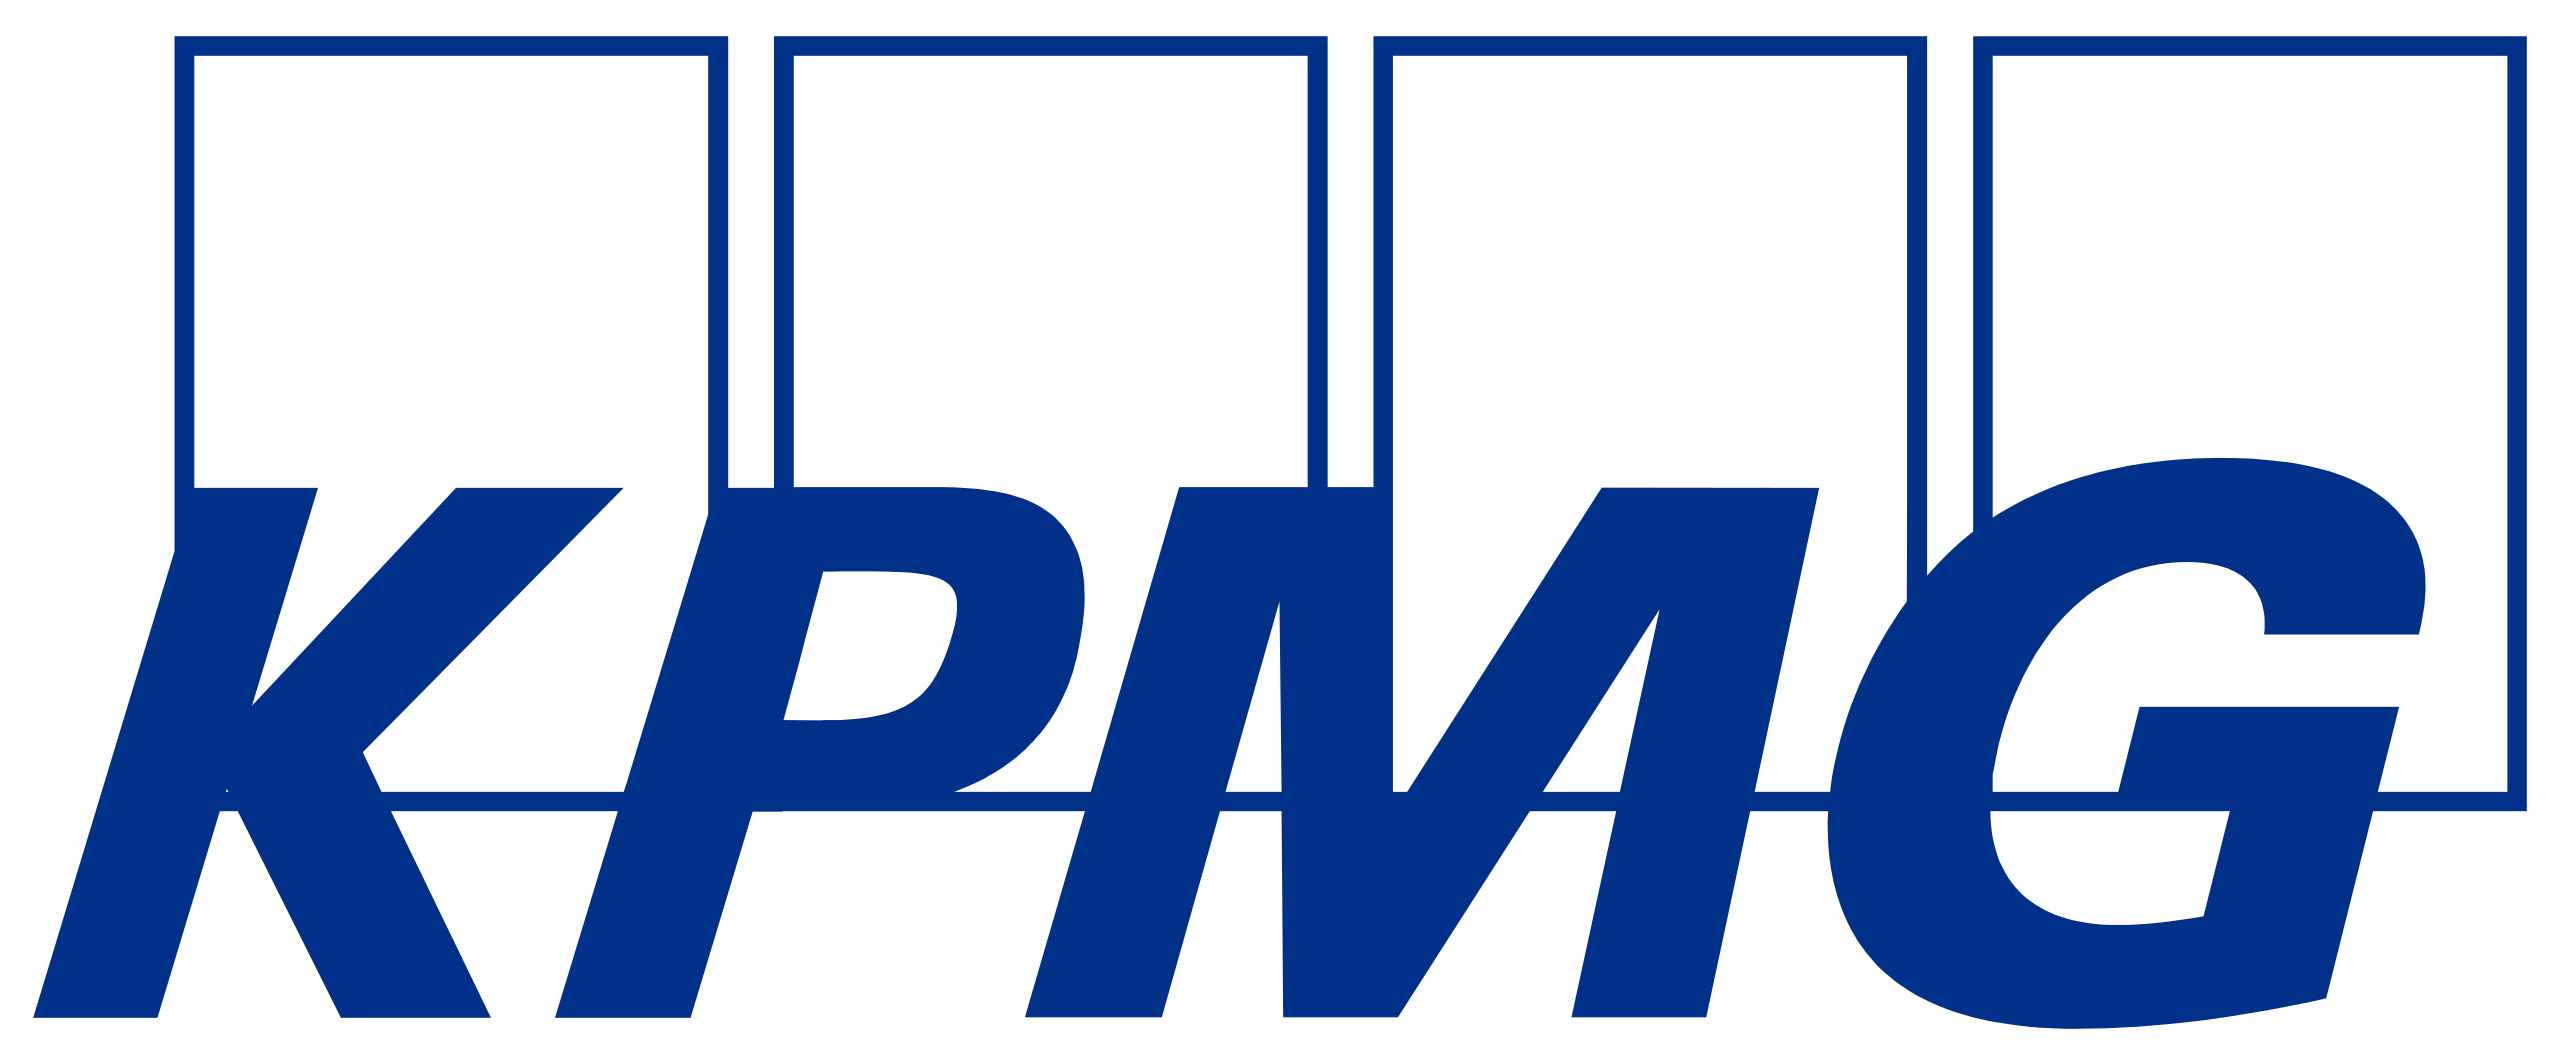 2560px-KPMG_logo.svg